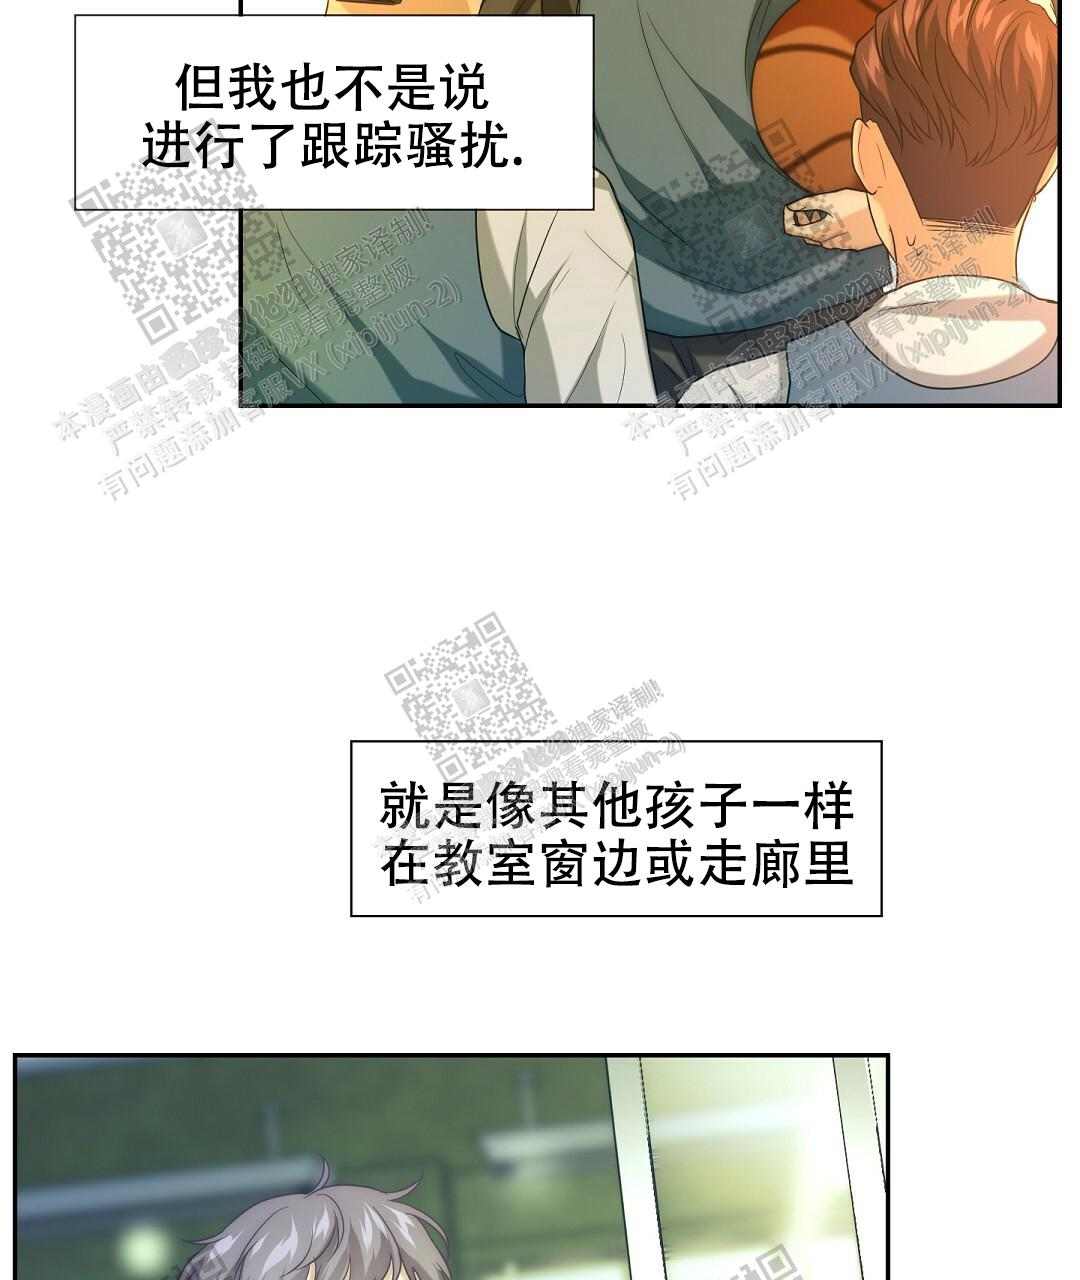 啵乐官网免费漫画42